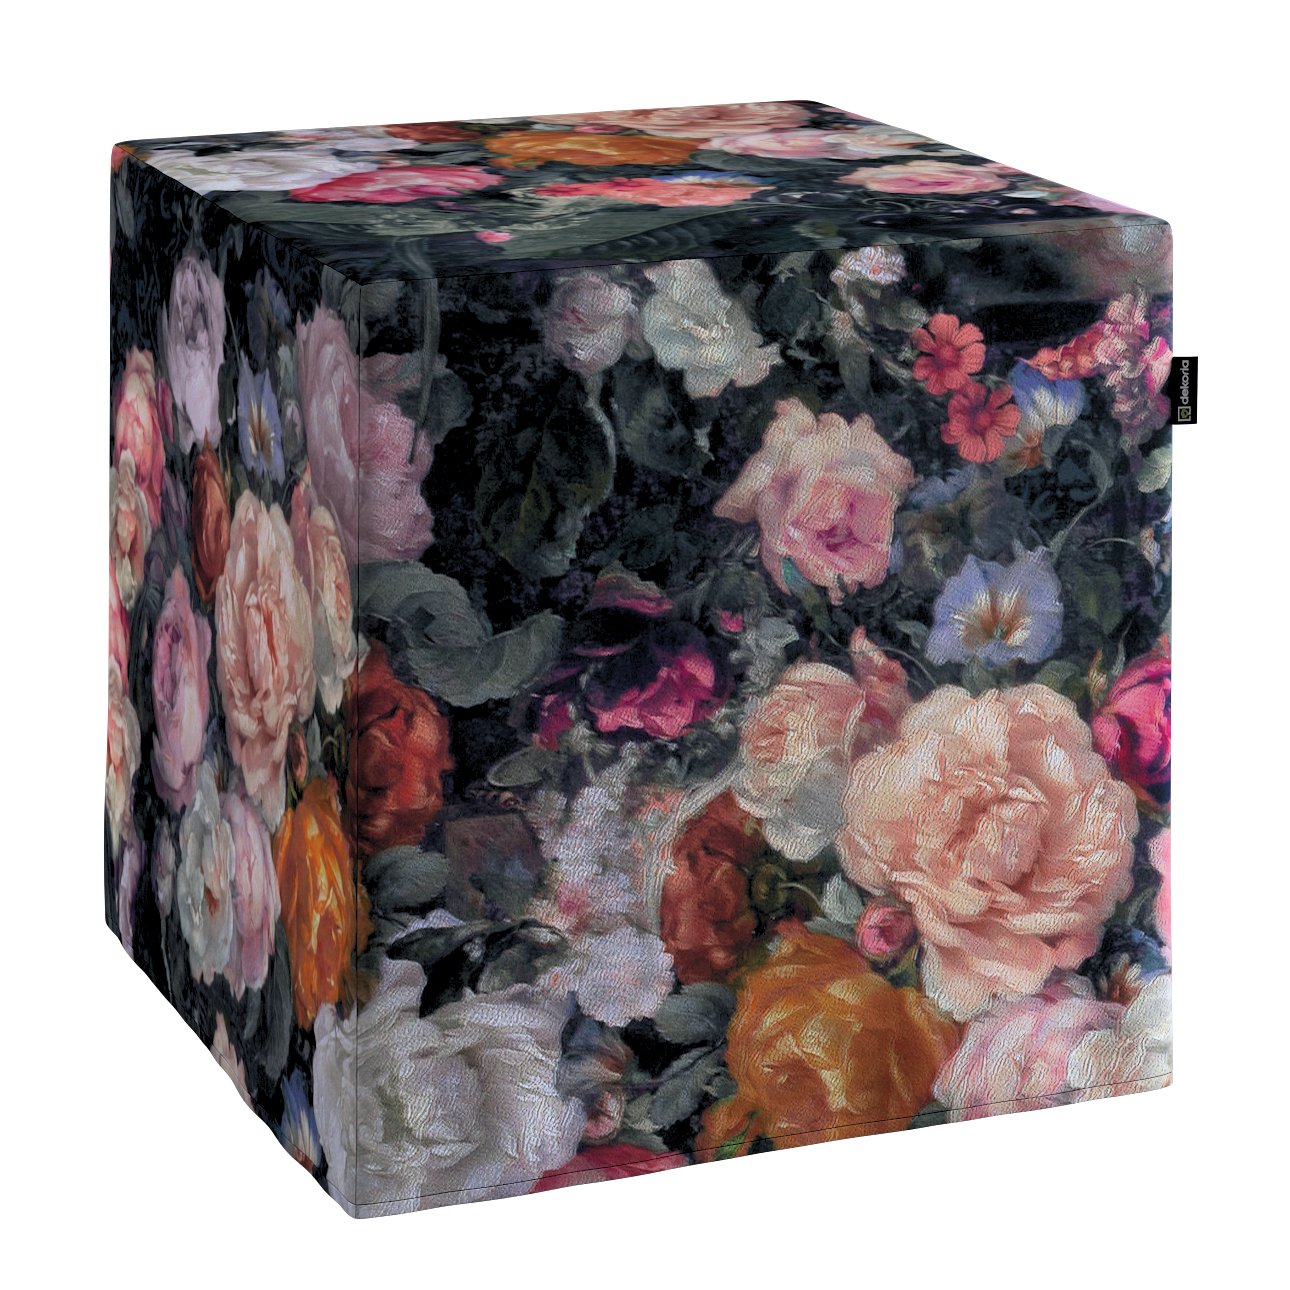 Dekoria Taburetka tvrdá, kocka, farebné kvety na tmavom pozadí, 40 x 40 x 40 cm, Gardenia, 161-02